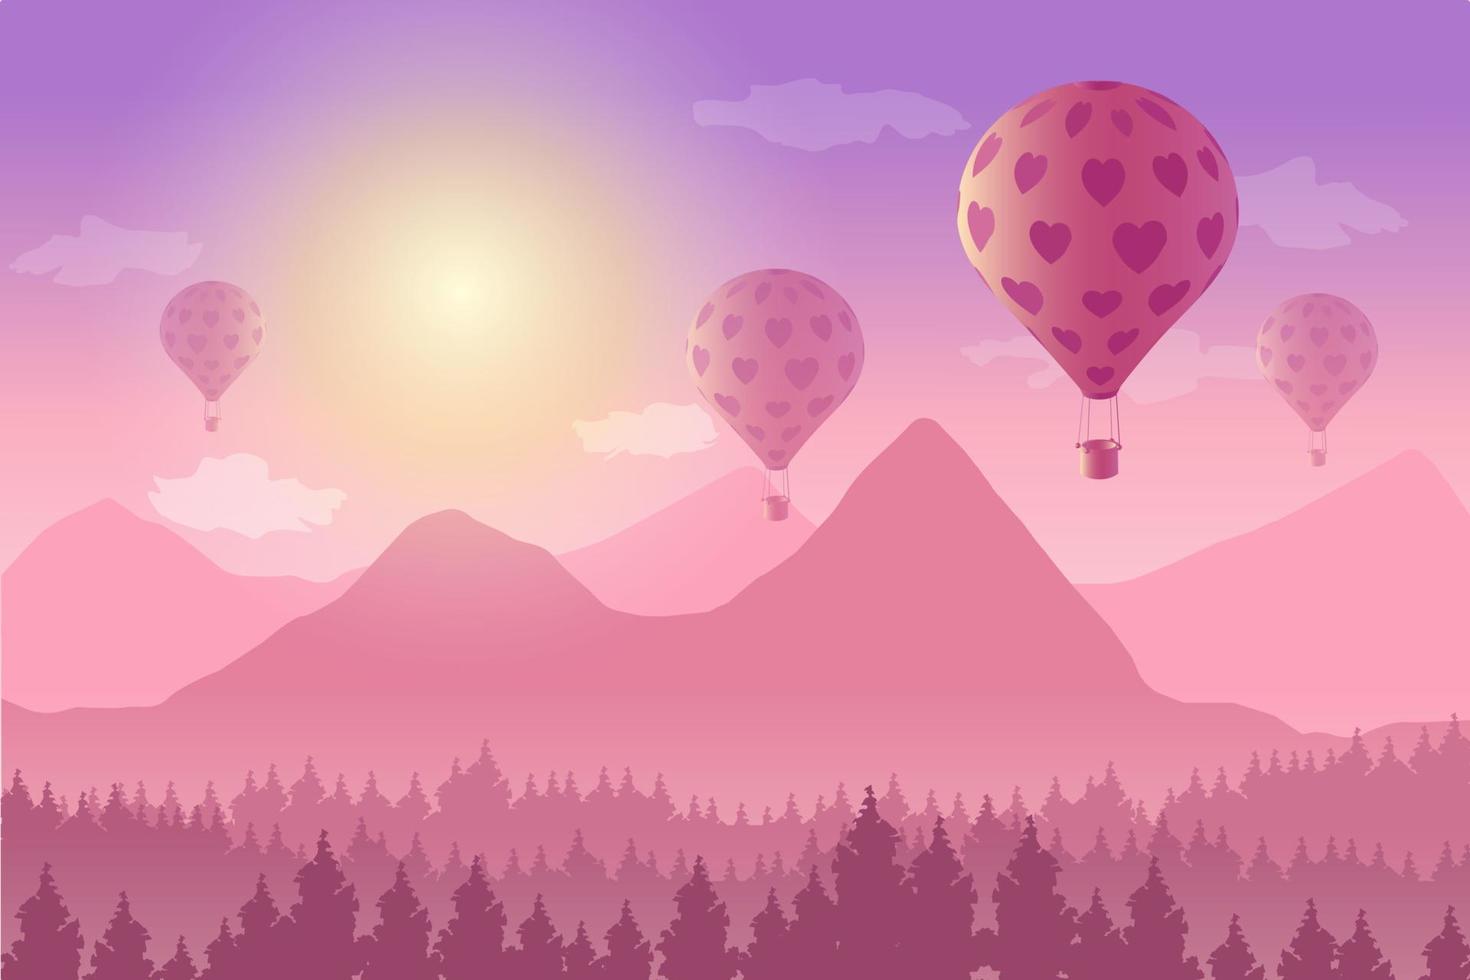 vektor illustration av landskap med luftballong ovanför bergen i solnedgången. romantisk, kärlek, alla hjärtans koncept.